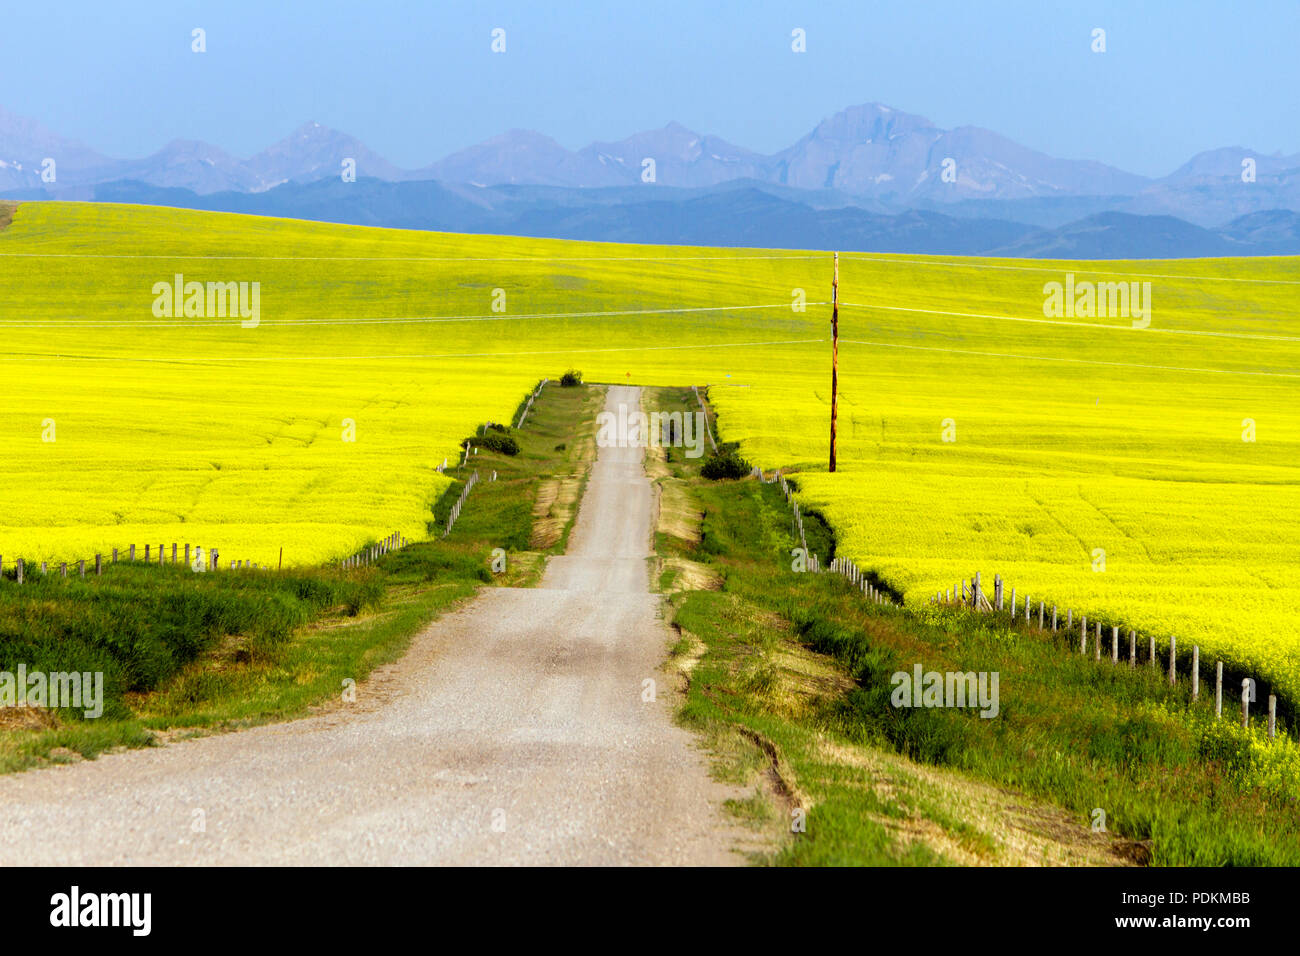 Un pays rural pittoresque paysage route jaune entourée d'un champ de canola en pleine floraison à Pincher Creek, Alberta, Canada. Banque D'Images